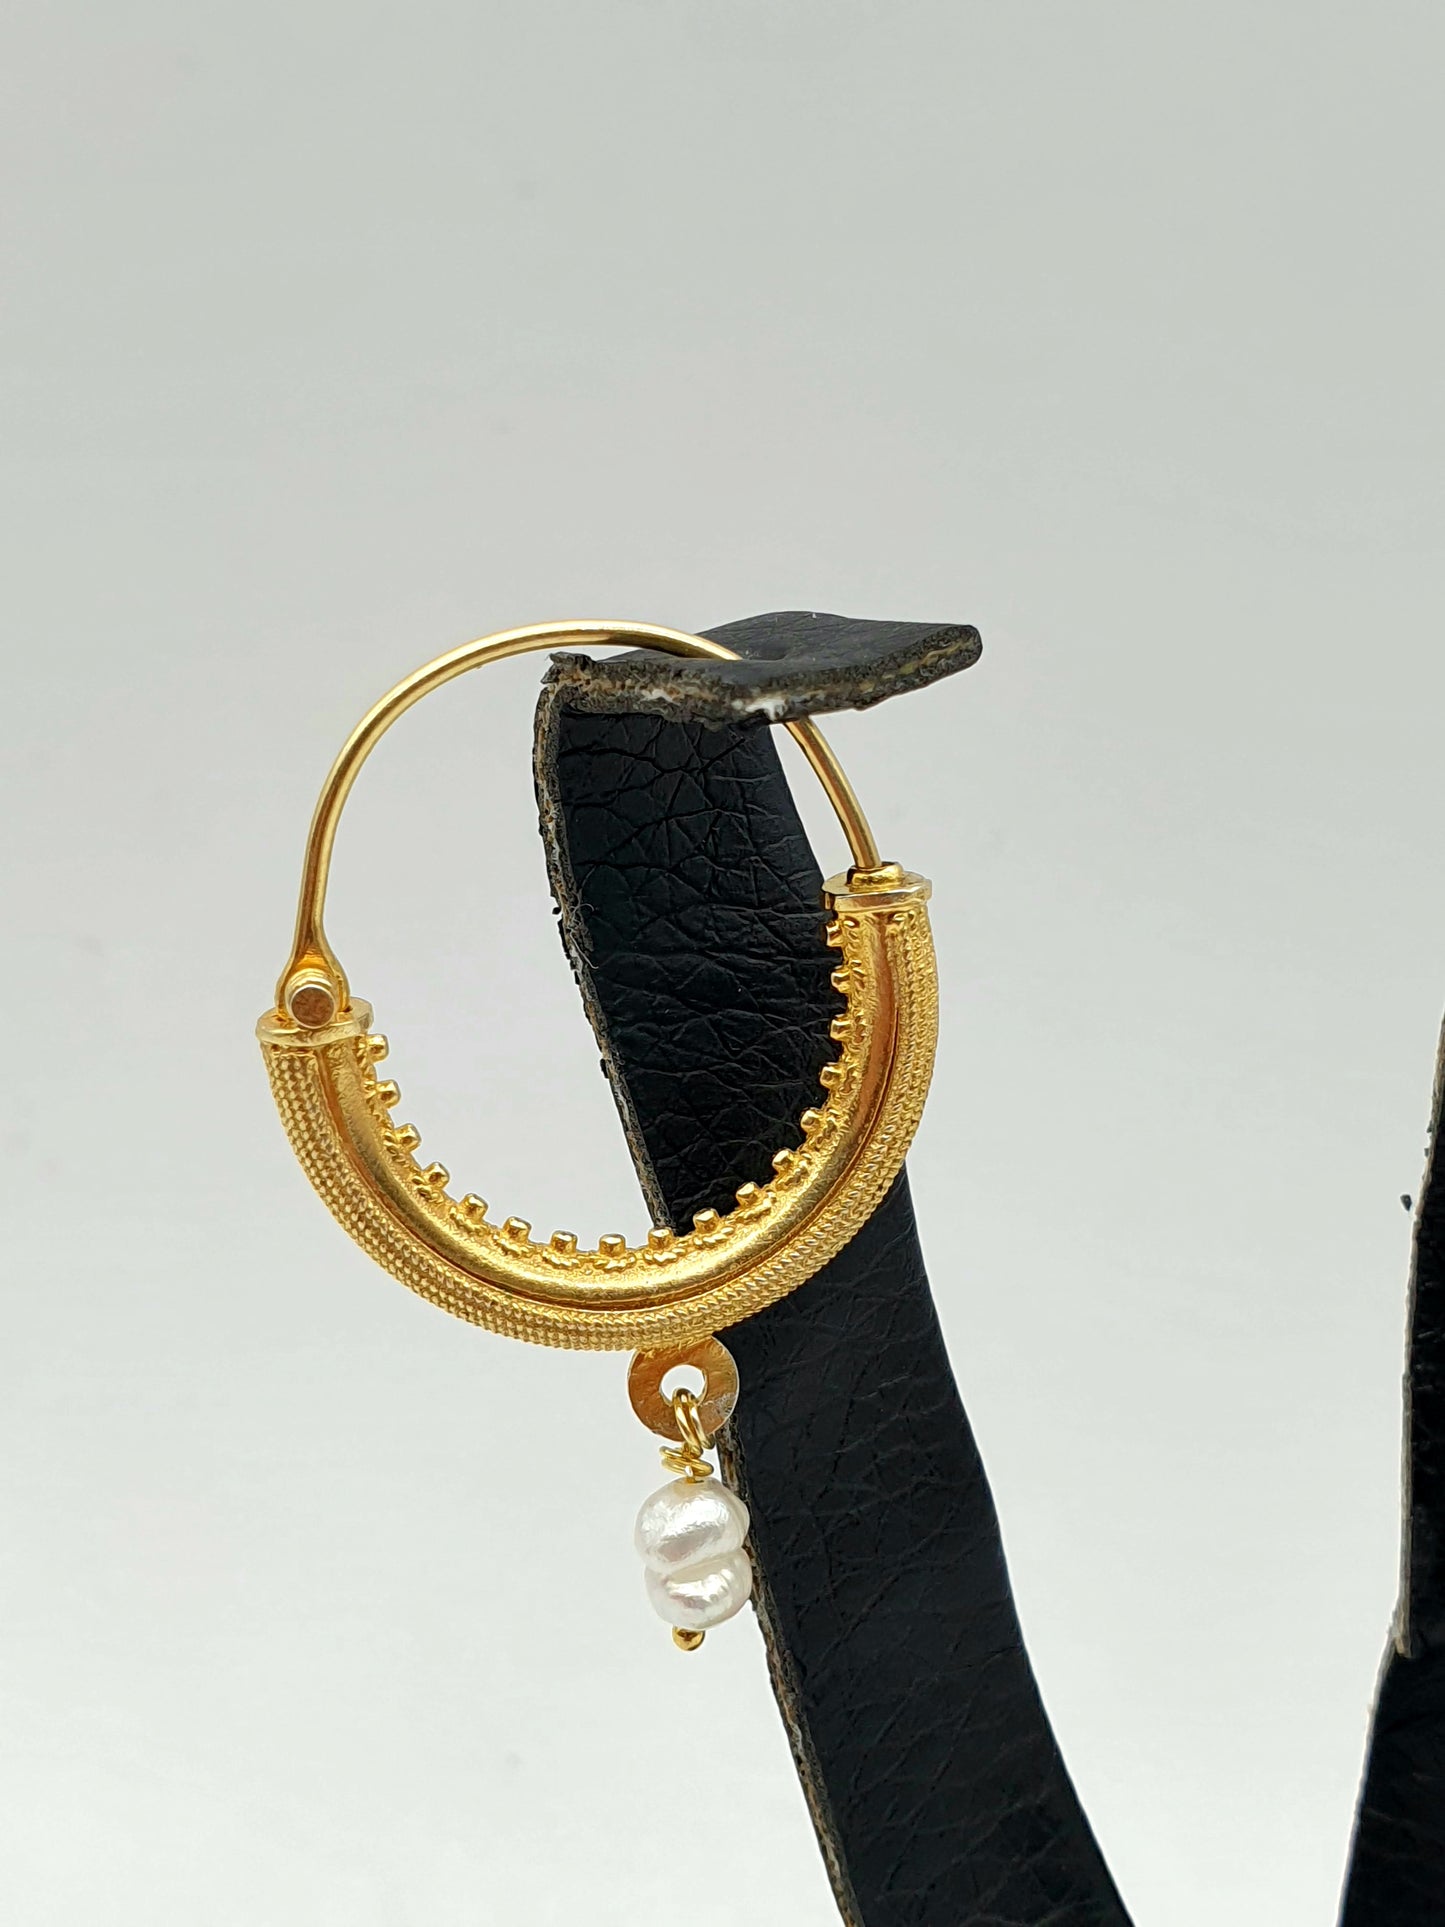 Konaovske earrings silver 925 gilt